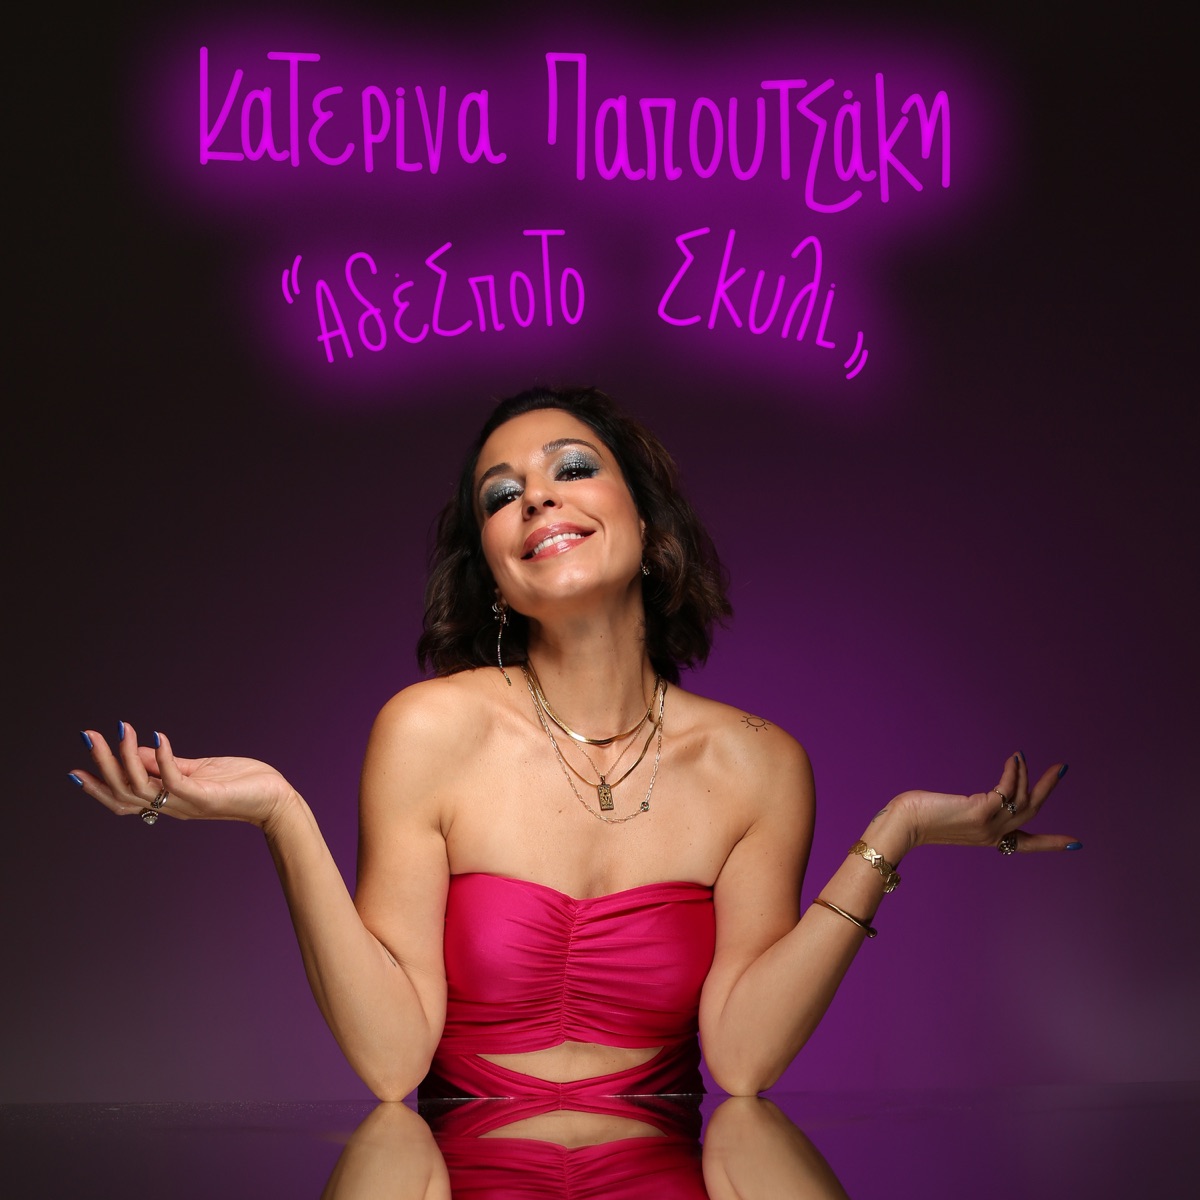 Katerina Papoutsaki - Adespoto Skyli - Single